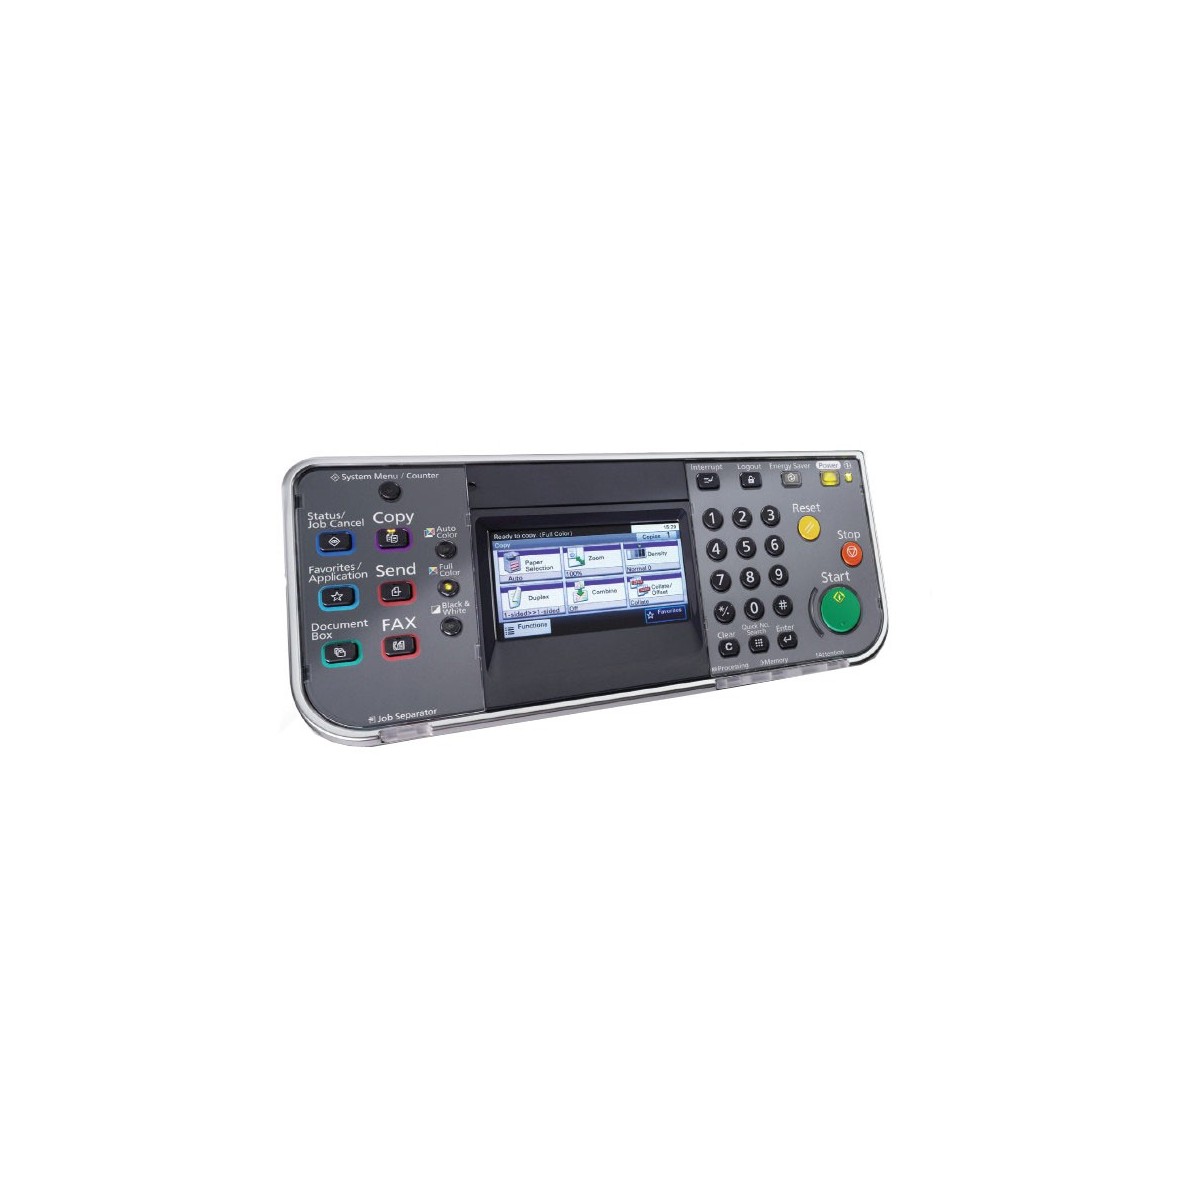 Kyocera Fax System U - 33.6 Kbit/s - JBIG - MH - MMR - MR - ITU-T G3 - Legal - A3,A4,A5 - 50 sheets